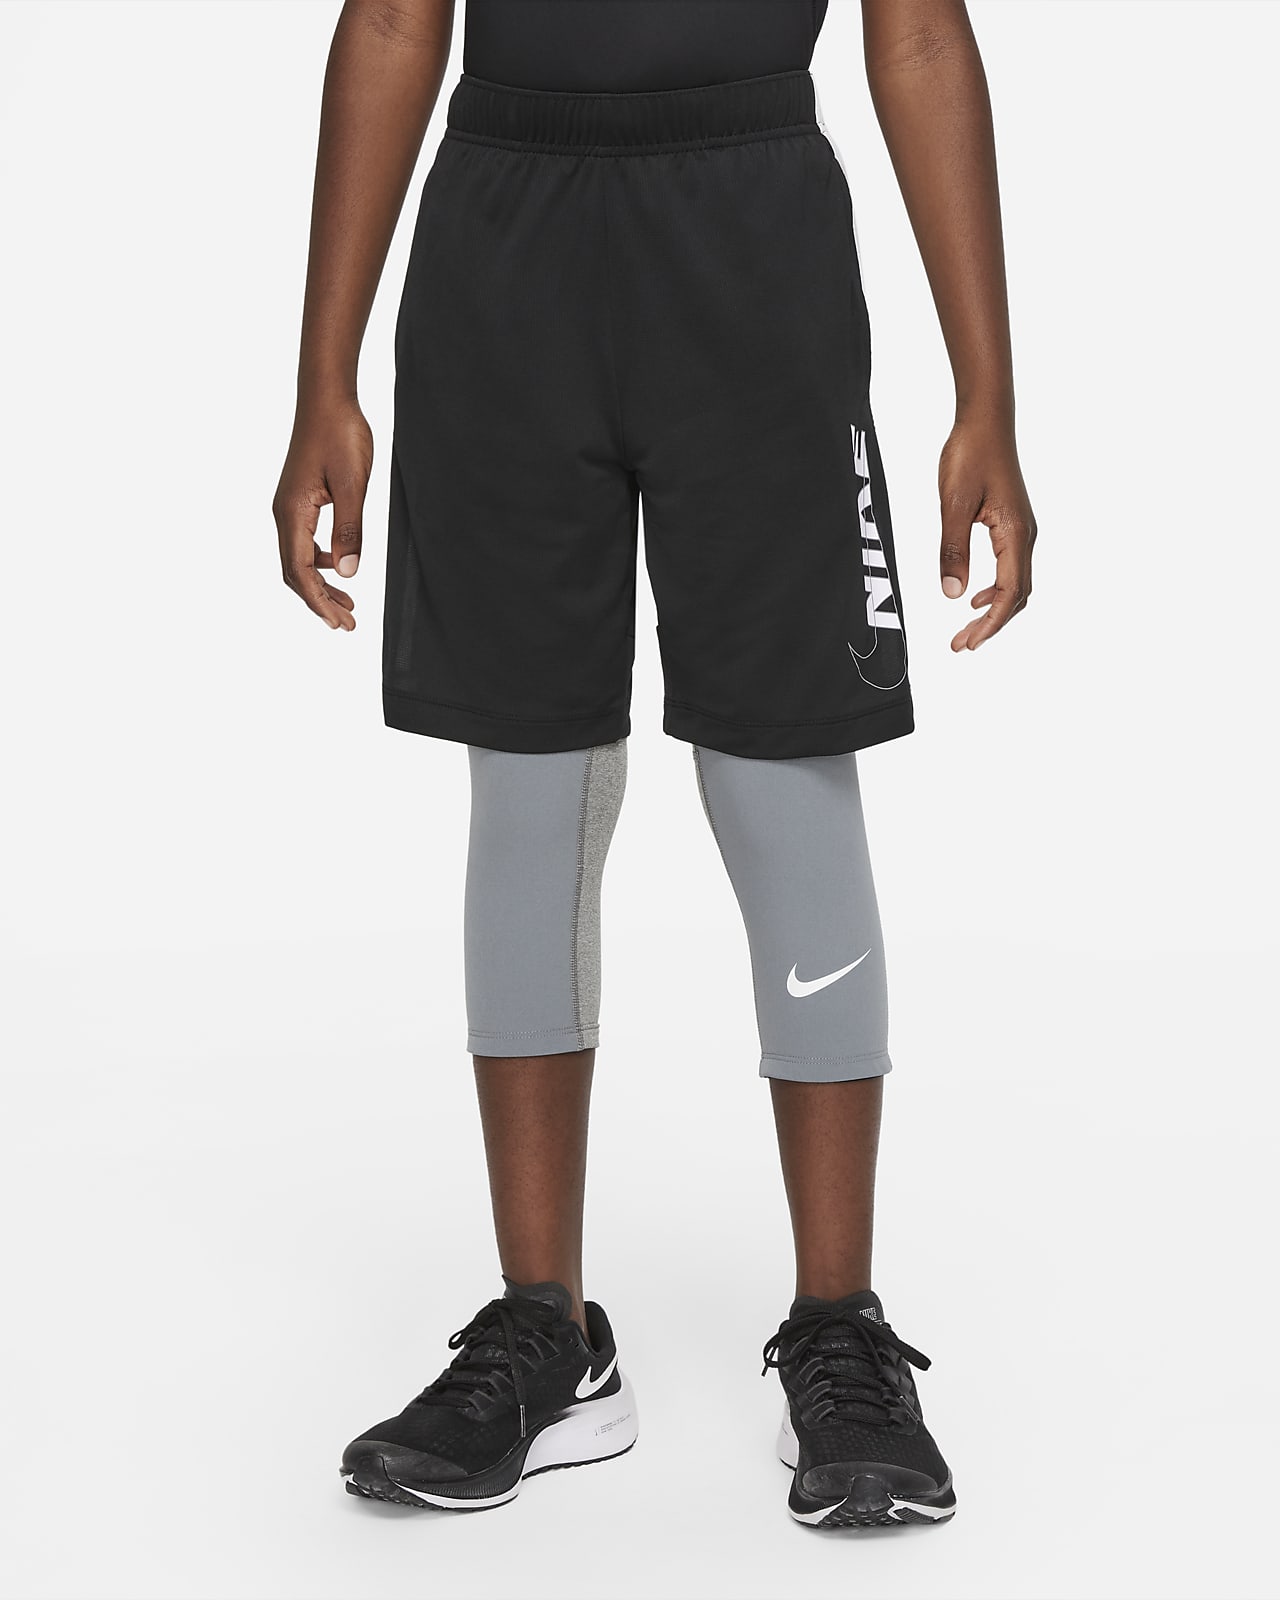 Nike Pro Dri-FIT Big Kids' (Boys') Tights.